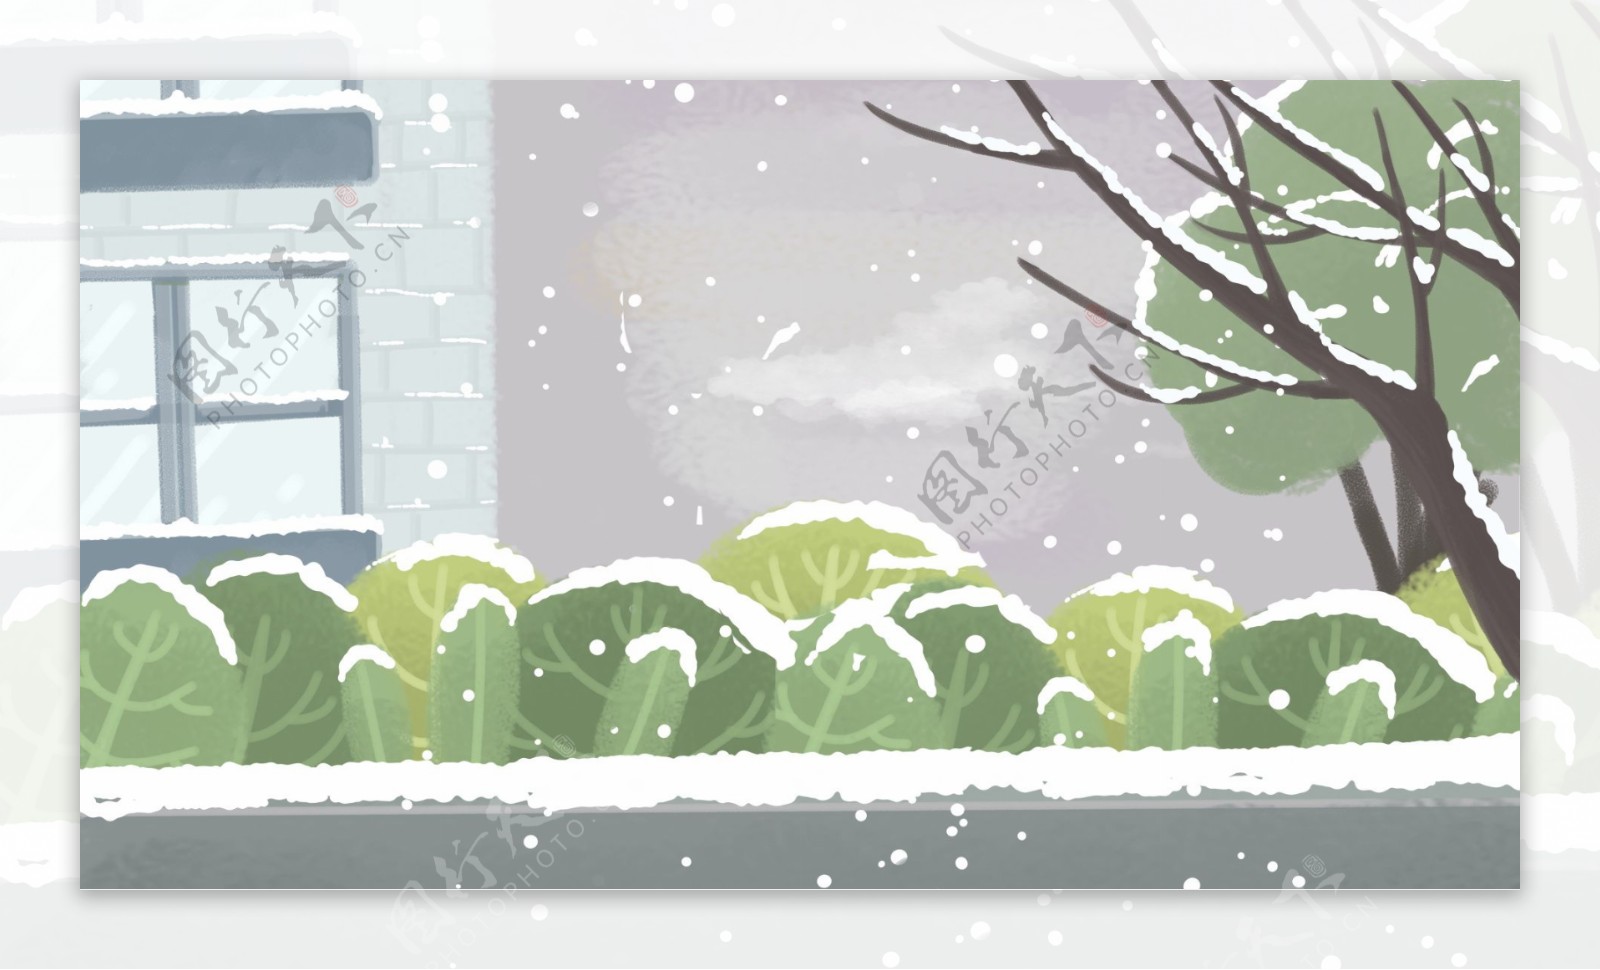 温馨冬季墙外雪景背景设计